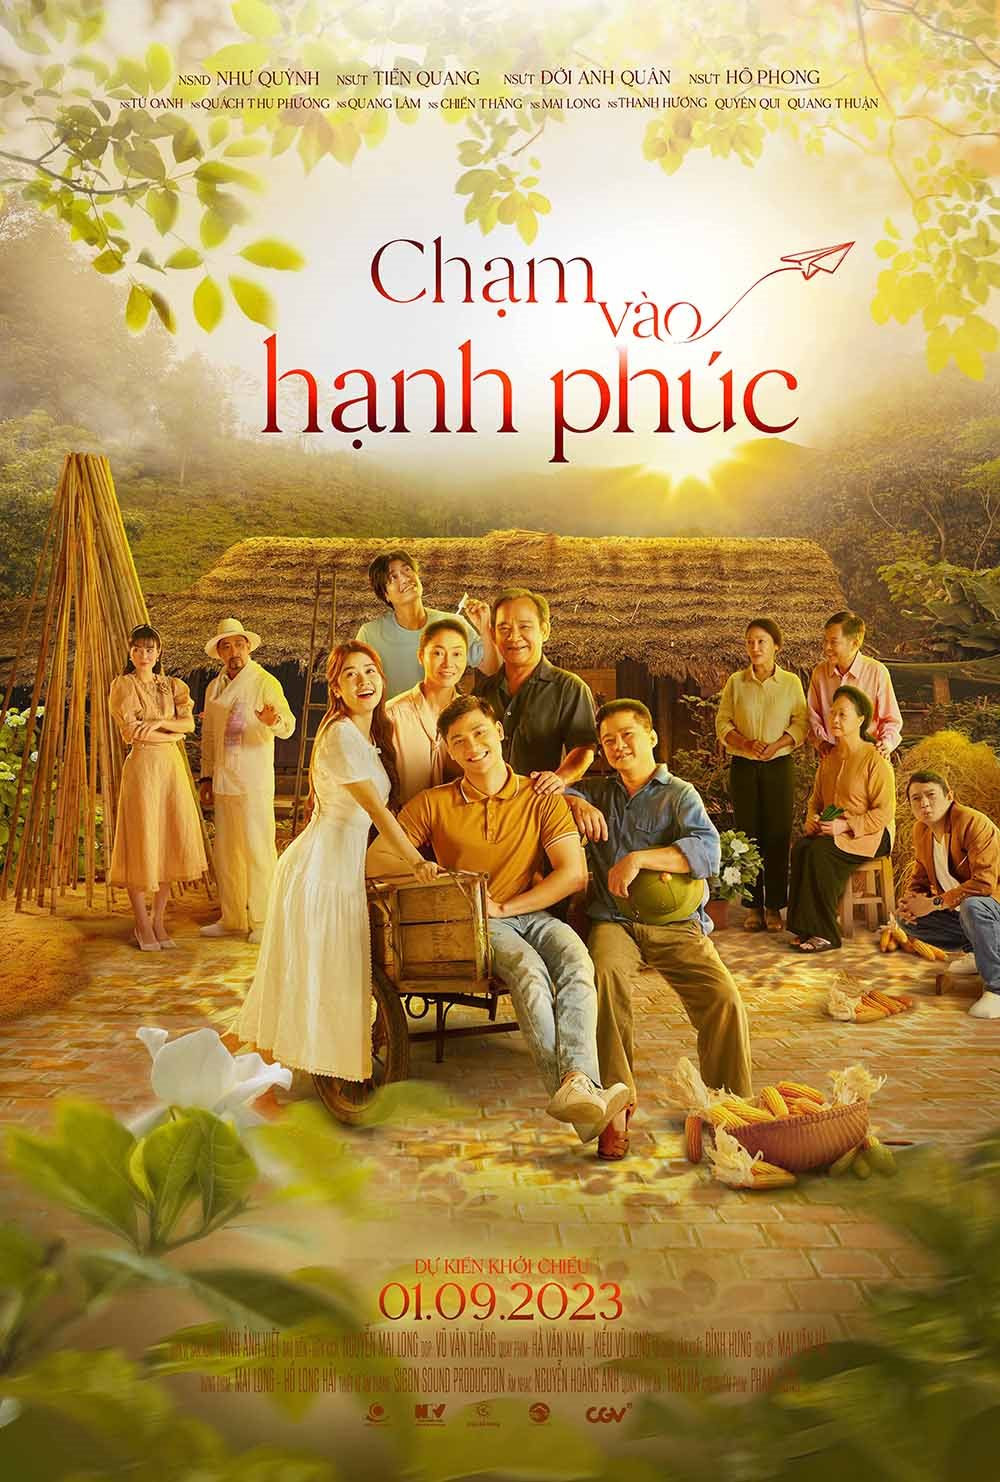 cham-vao-hanh-phuc-payoff-poster-khoi-chieu-01092023.jpg